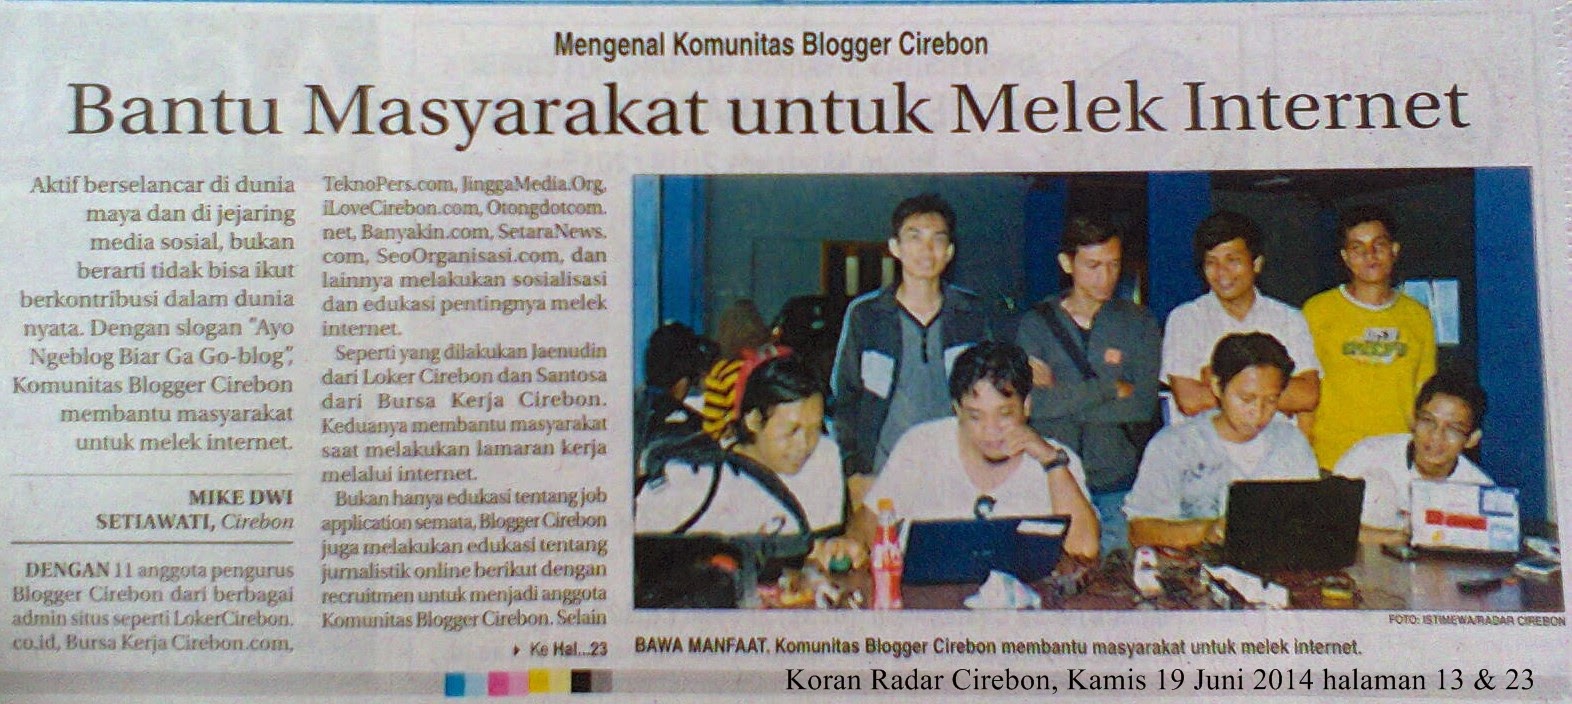 Blogger Cirebon  Nongol di Koran  Radar Cirebon  Bantu 